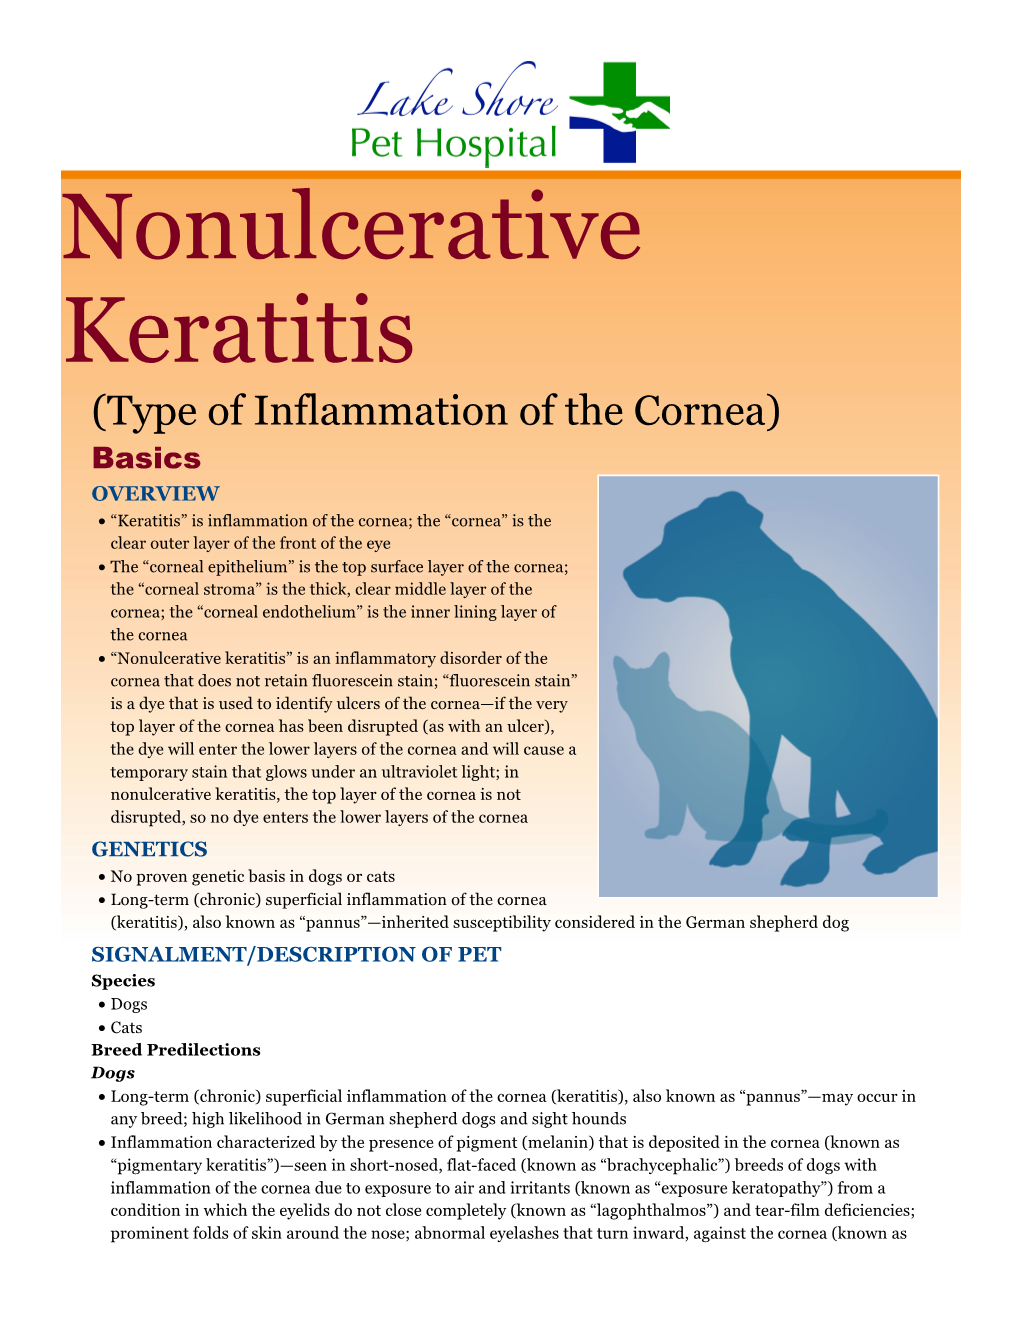 Nonulcerative Keratitis